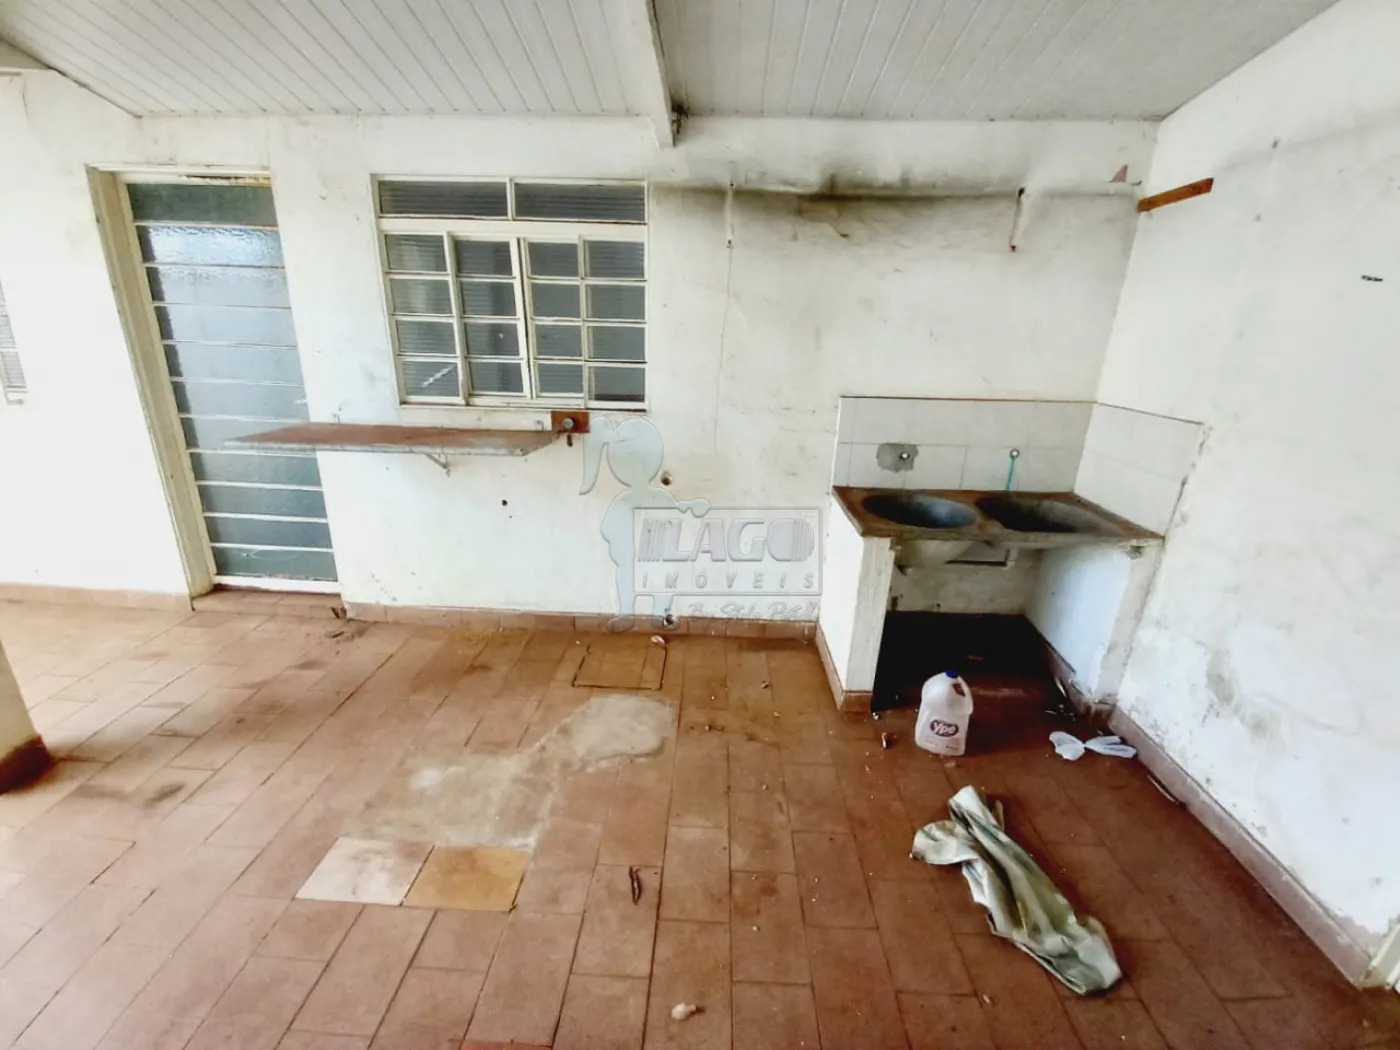 Comprar Casa / Padrão em Ribeirão Preto R$ 380.000,00 - Foto 9